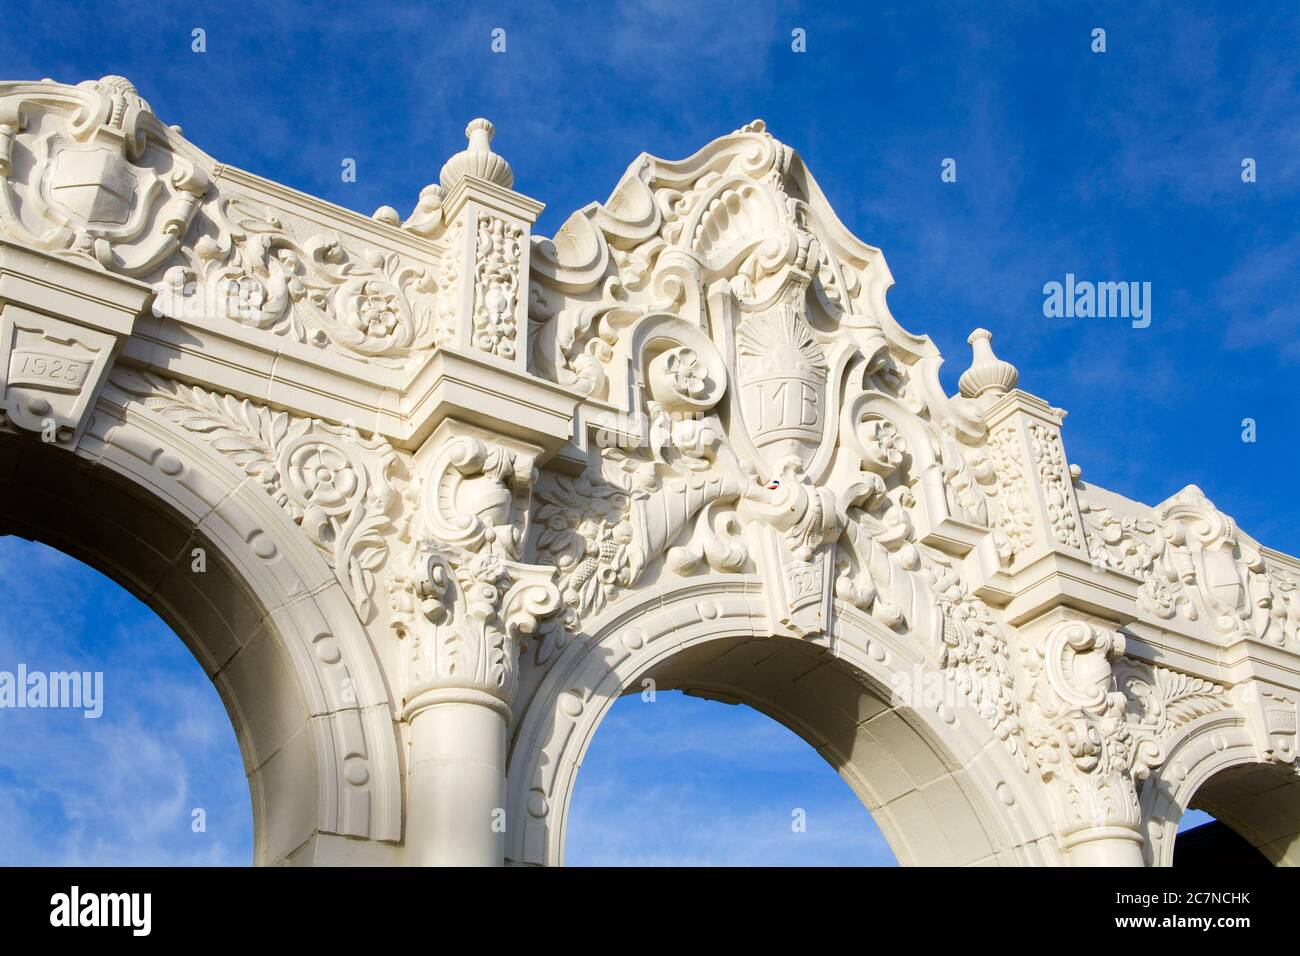 Arch dans Belmont Park sur Mission Beach, San Diego, Californie, Etats-Unis Banque D'Images